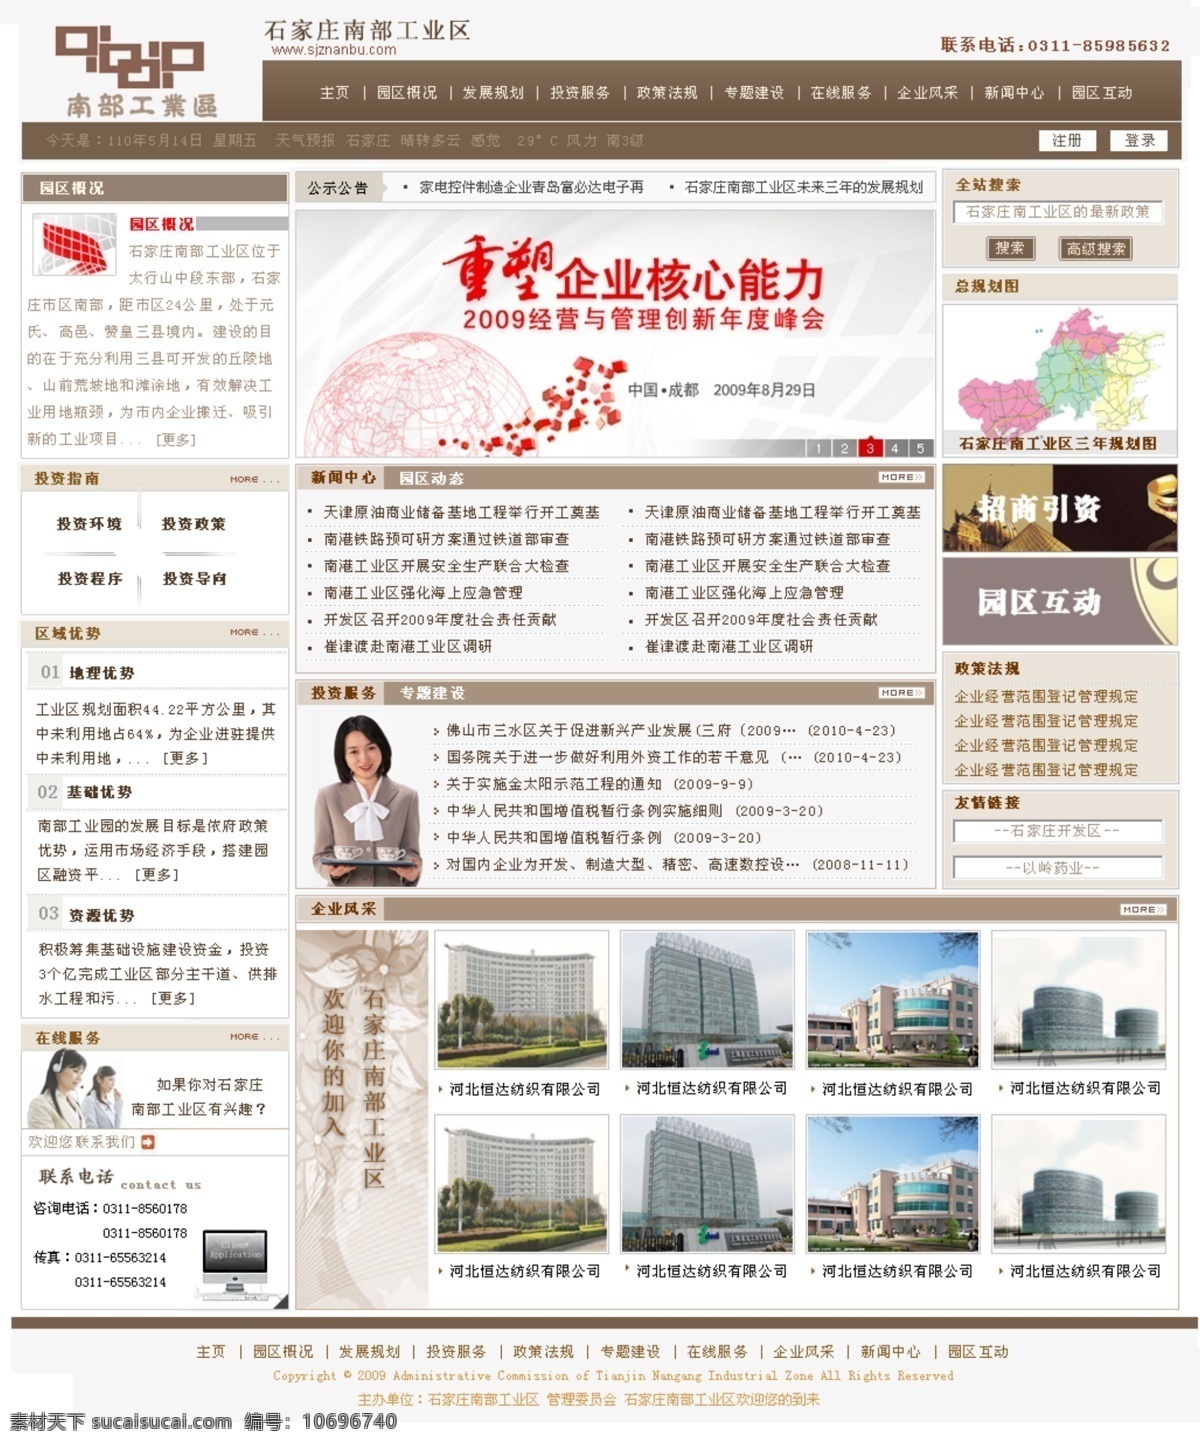 工业区 网页模板 大气 公司网站 咖啡色 网页效果图 源文件 政府网站 中文模版 新闻网站 网页素材